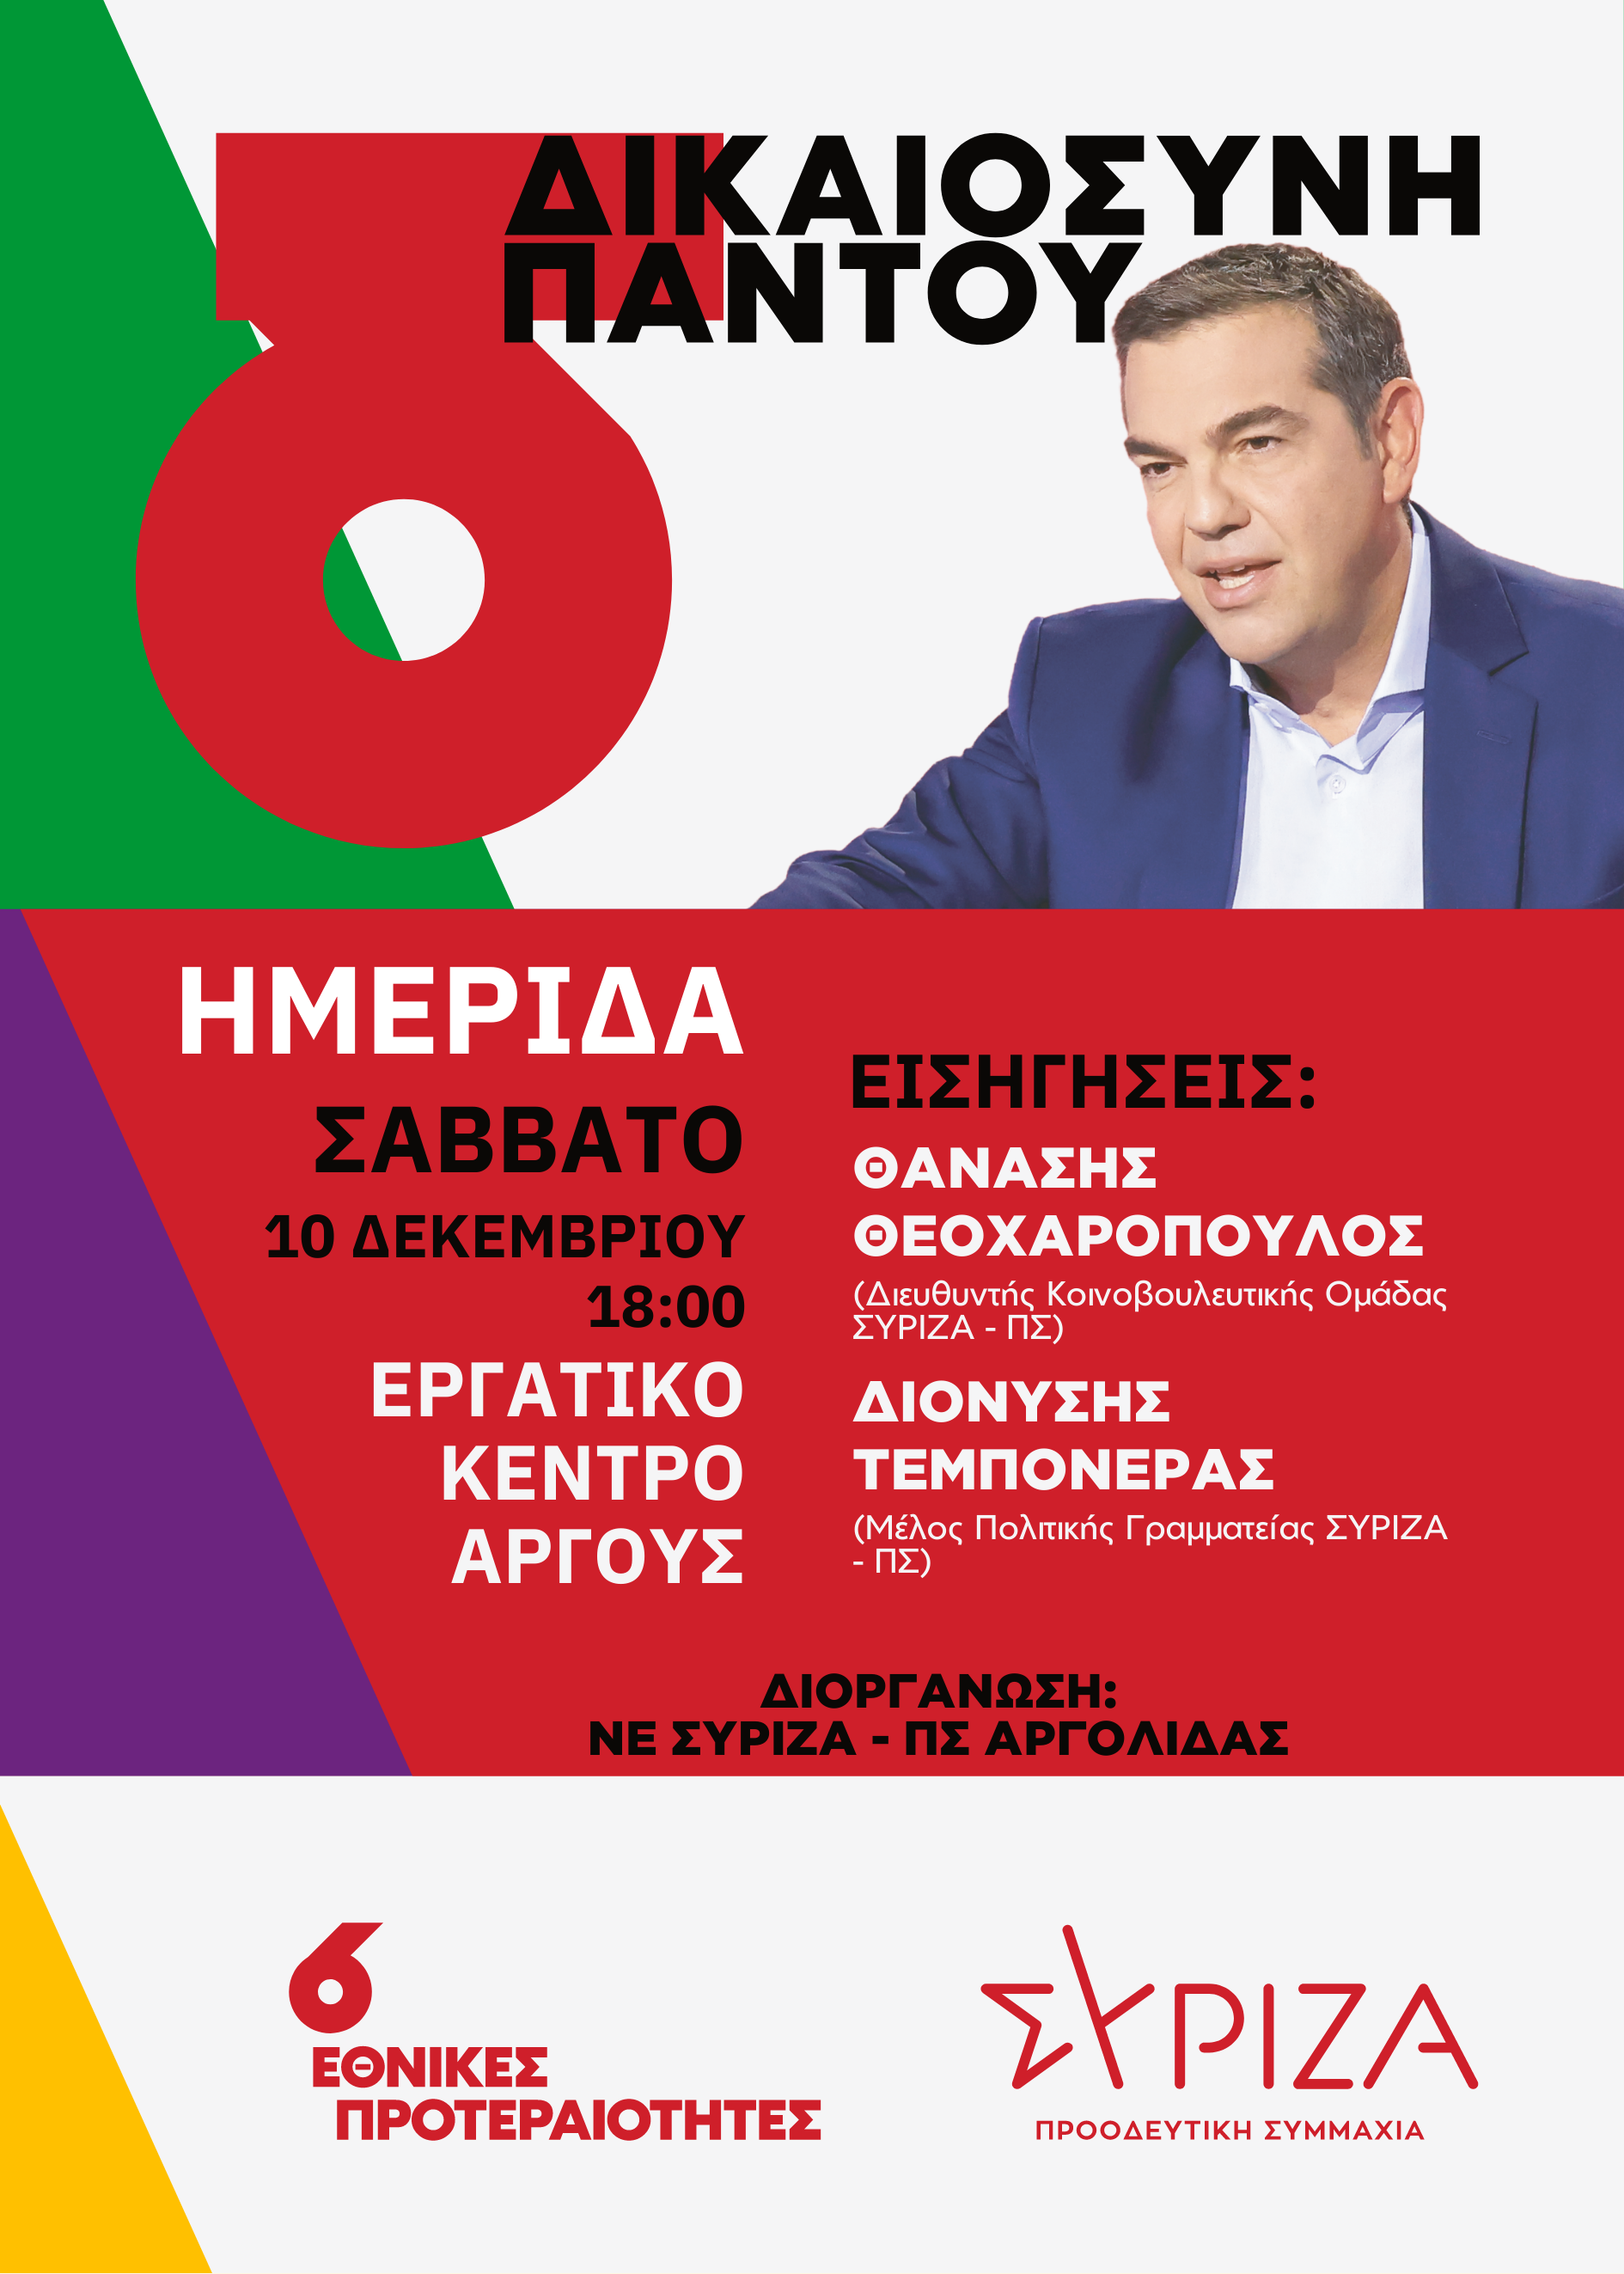 Ημερίδα της Ν.Ε. Αργολίδας με κεντρικό θέμα τους 6 προγραμματικούς άξονες του ΣΥΡΙΖΑ-ΠΣ